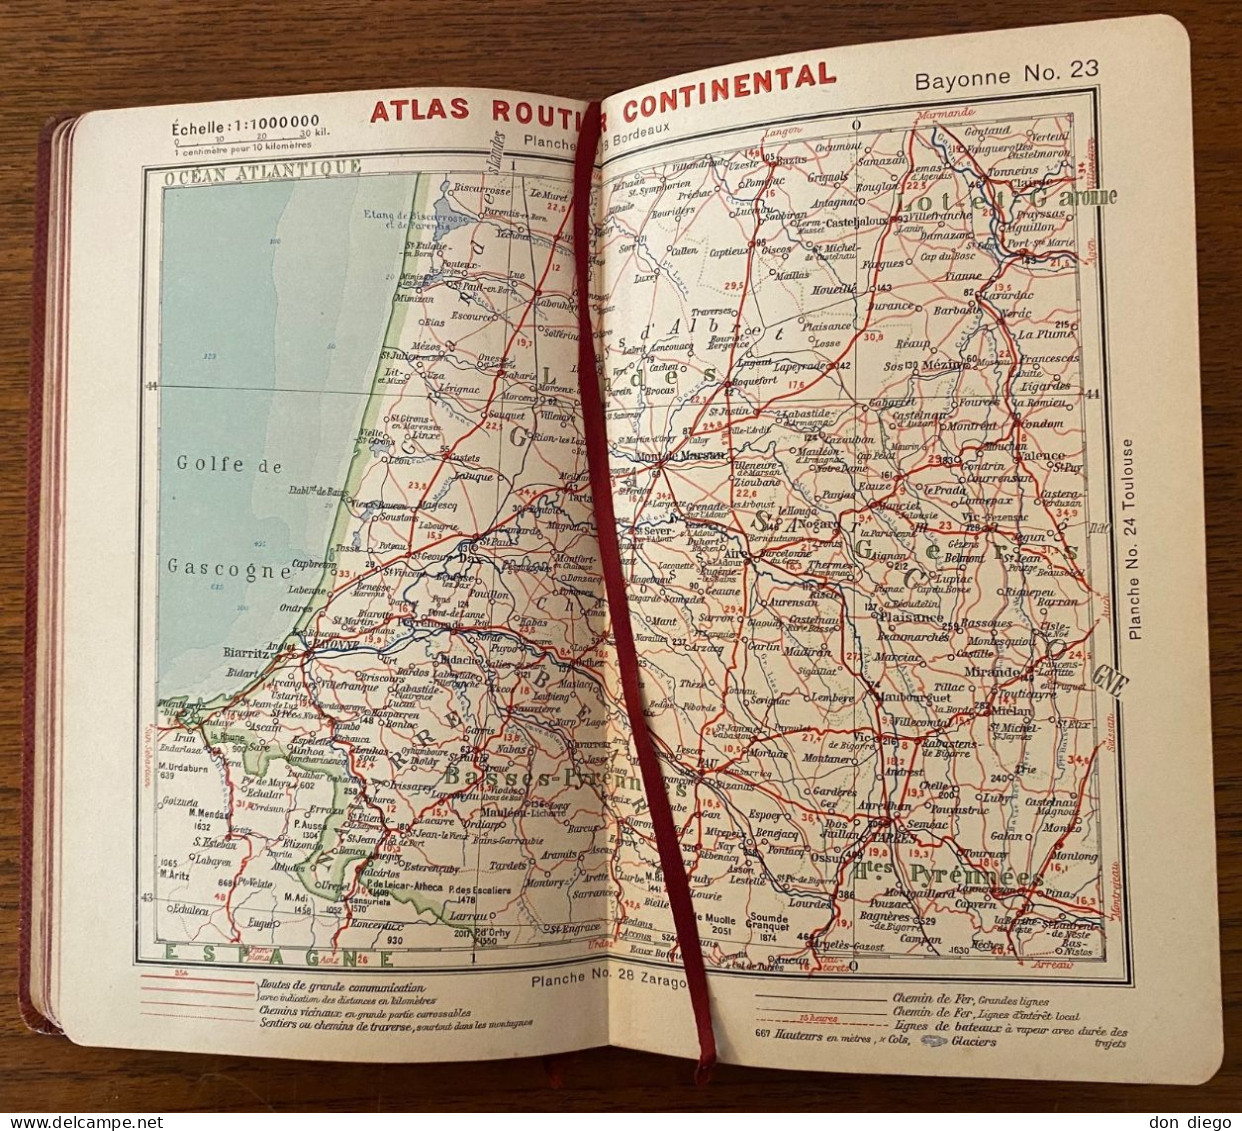 Atlas Routier CONTINENTAL pour les touristes en automobile / Cartes France, Algérie et Tunisie / 1908